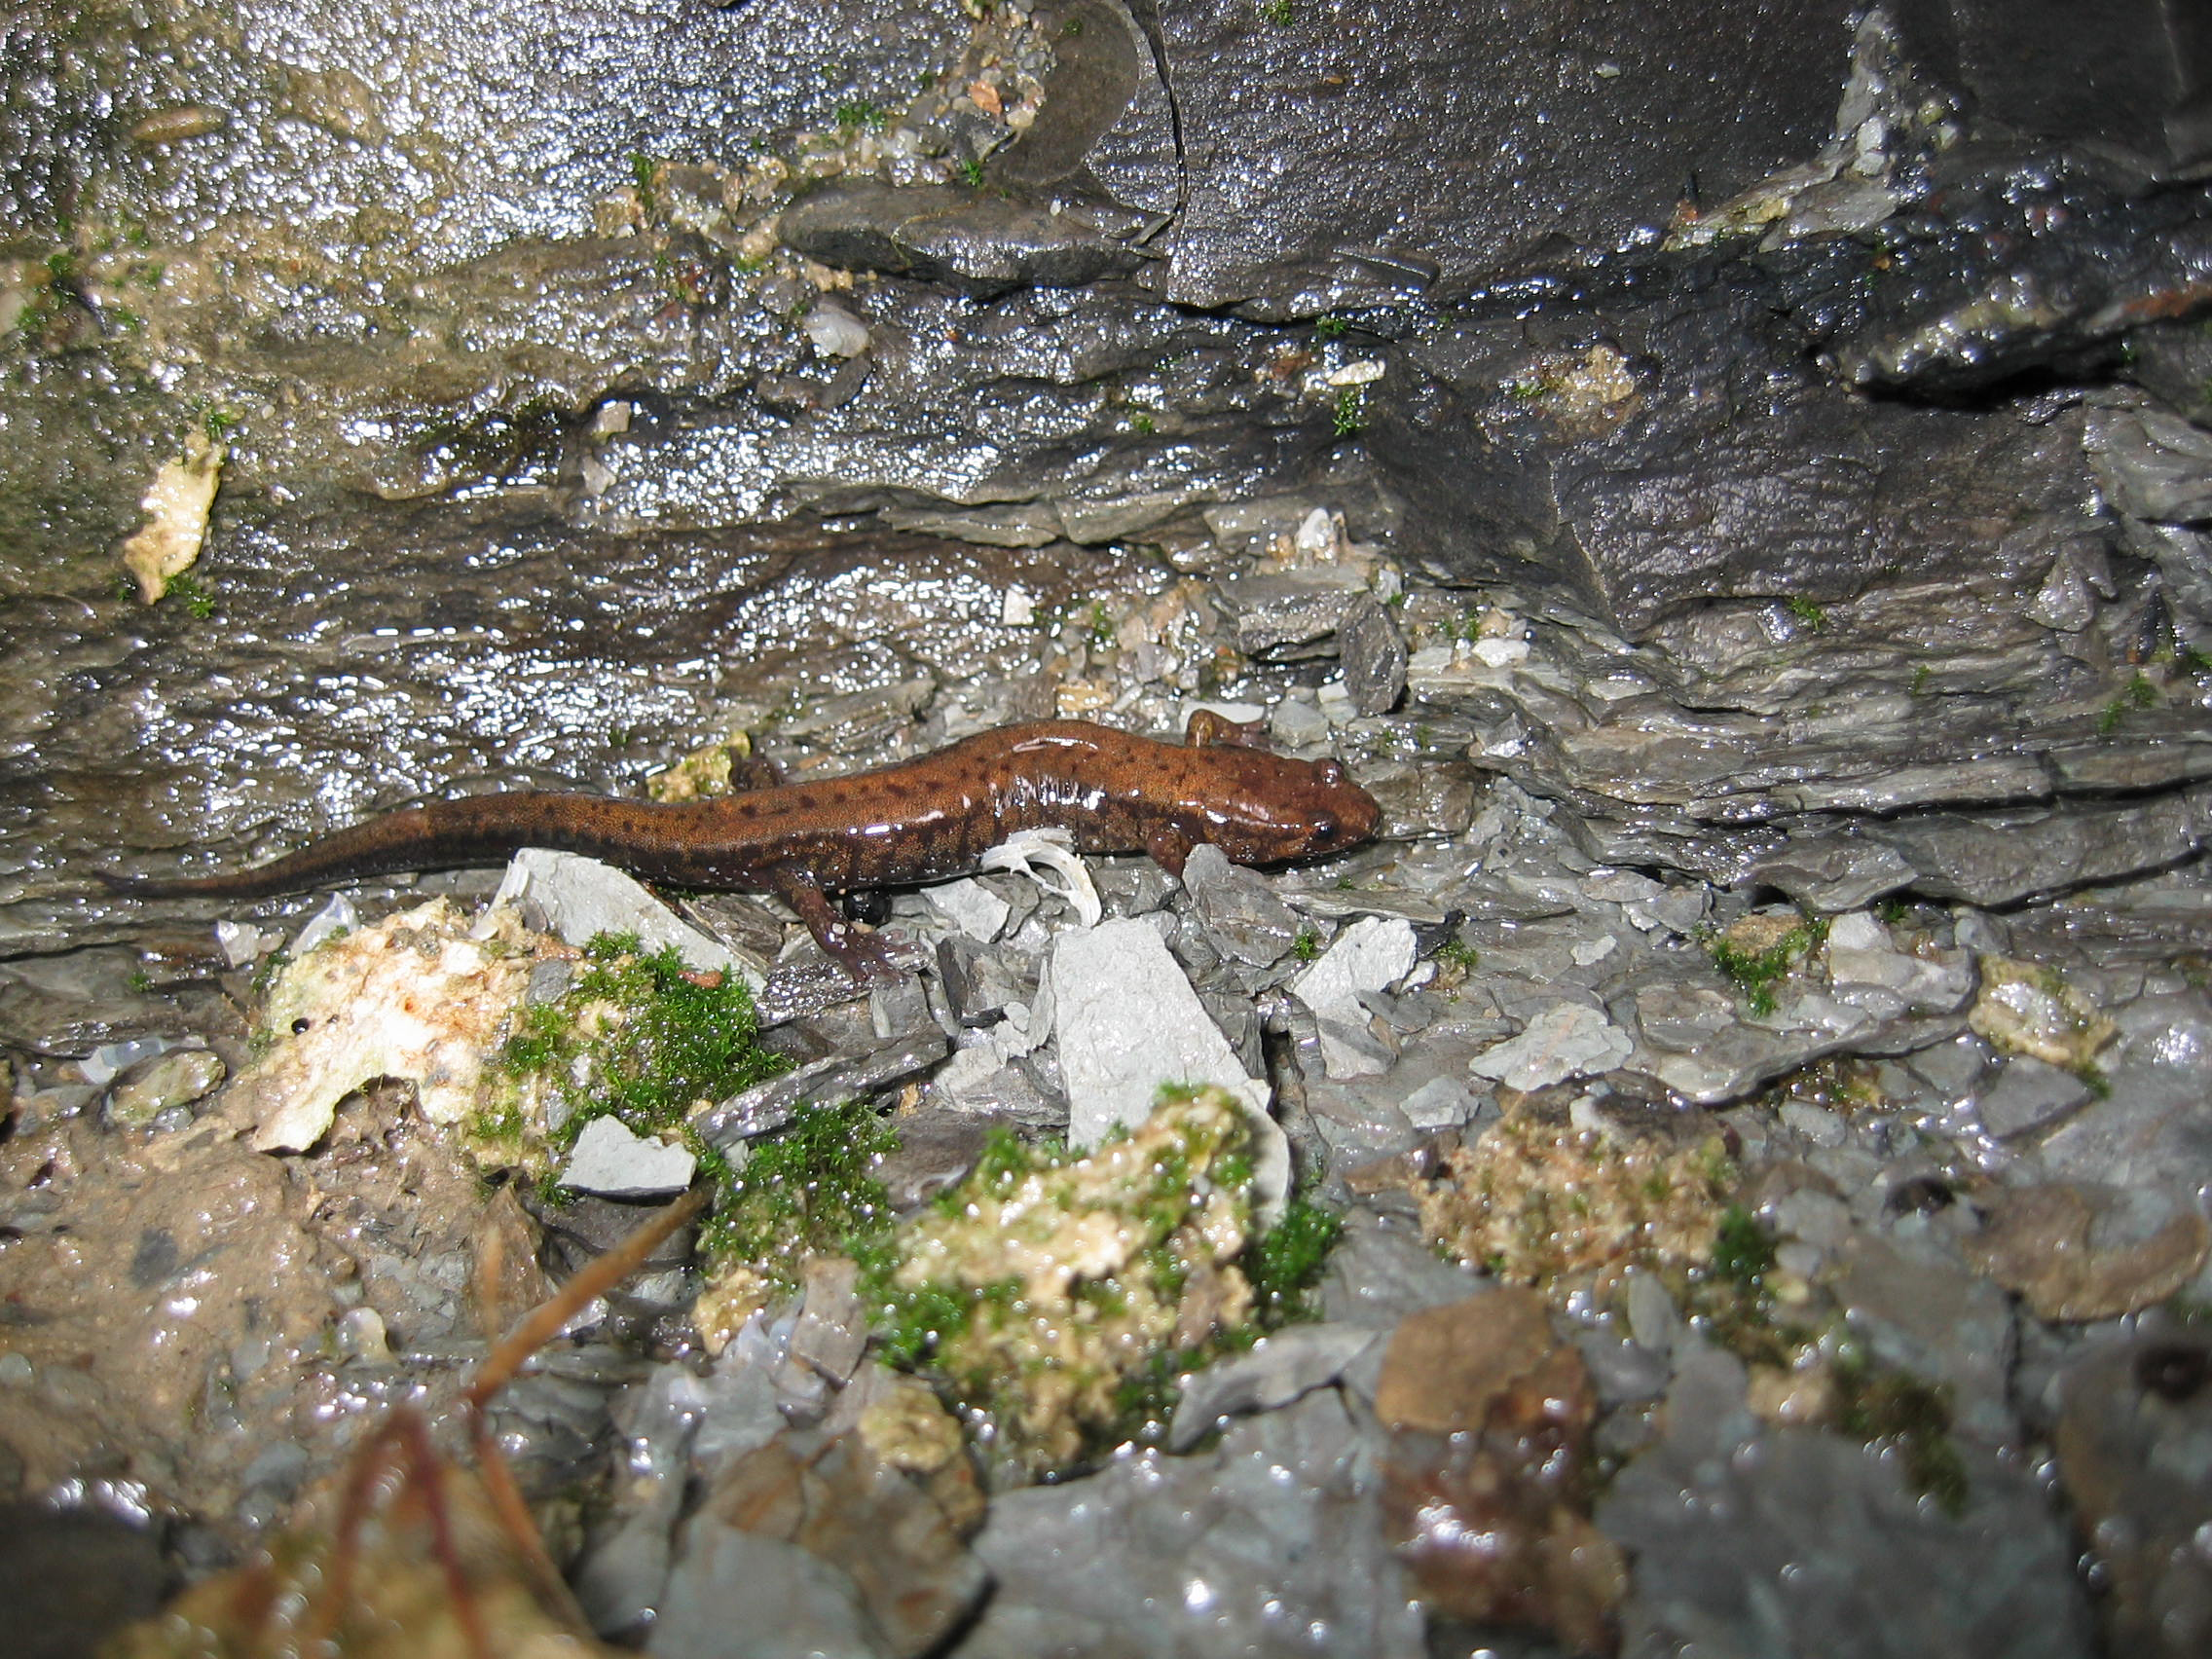 Une photo d’une salamandre sombre des montagnes